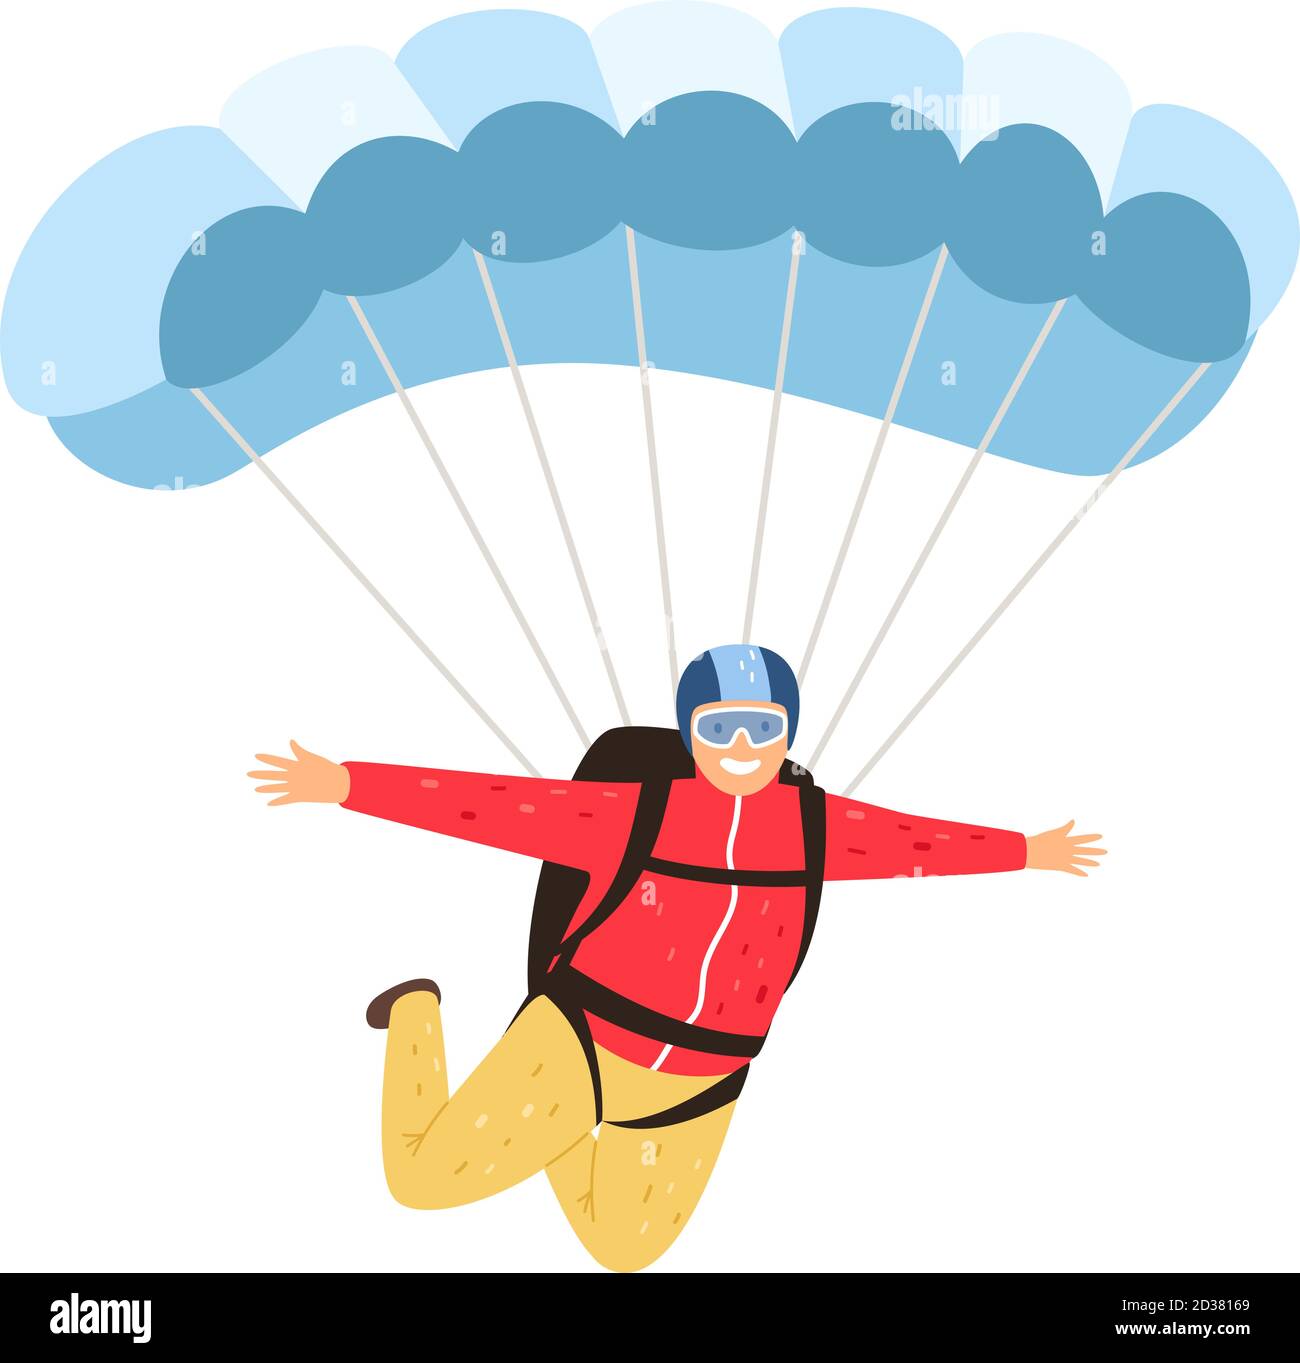 Fallschirmspringer isoliert. Gemächlicher Fallschirmspringer isoliert auf weißem Hintergrund, Fallschirmspringer Mann in Himmel, Fallschirm Lifestyle Freizeit Aktivität und Menschen Abenteuer, Vektor-Illustration Stock Vektor